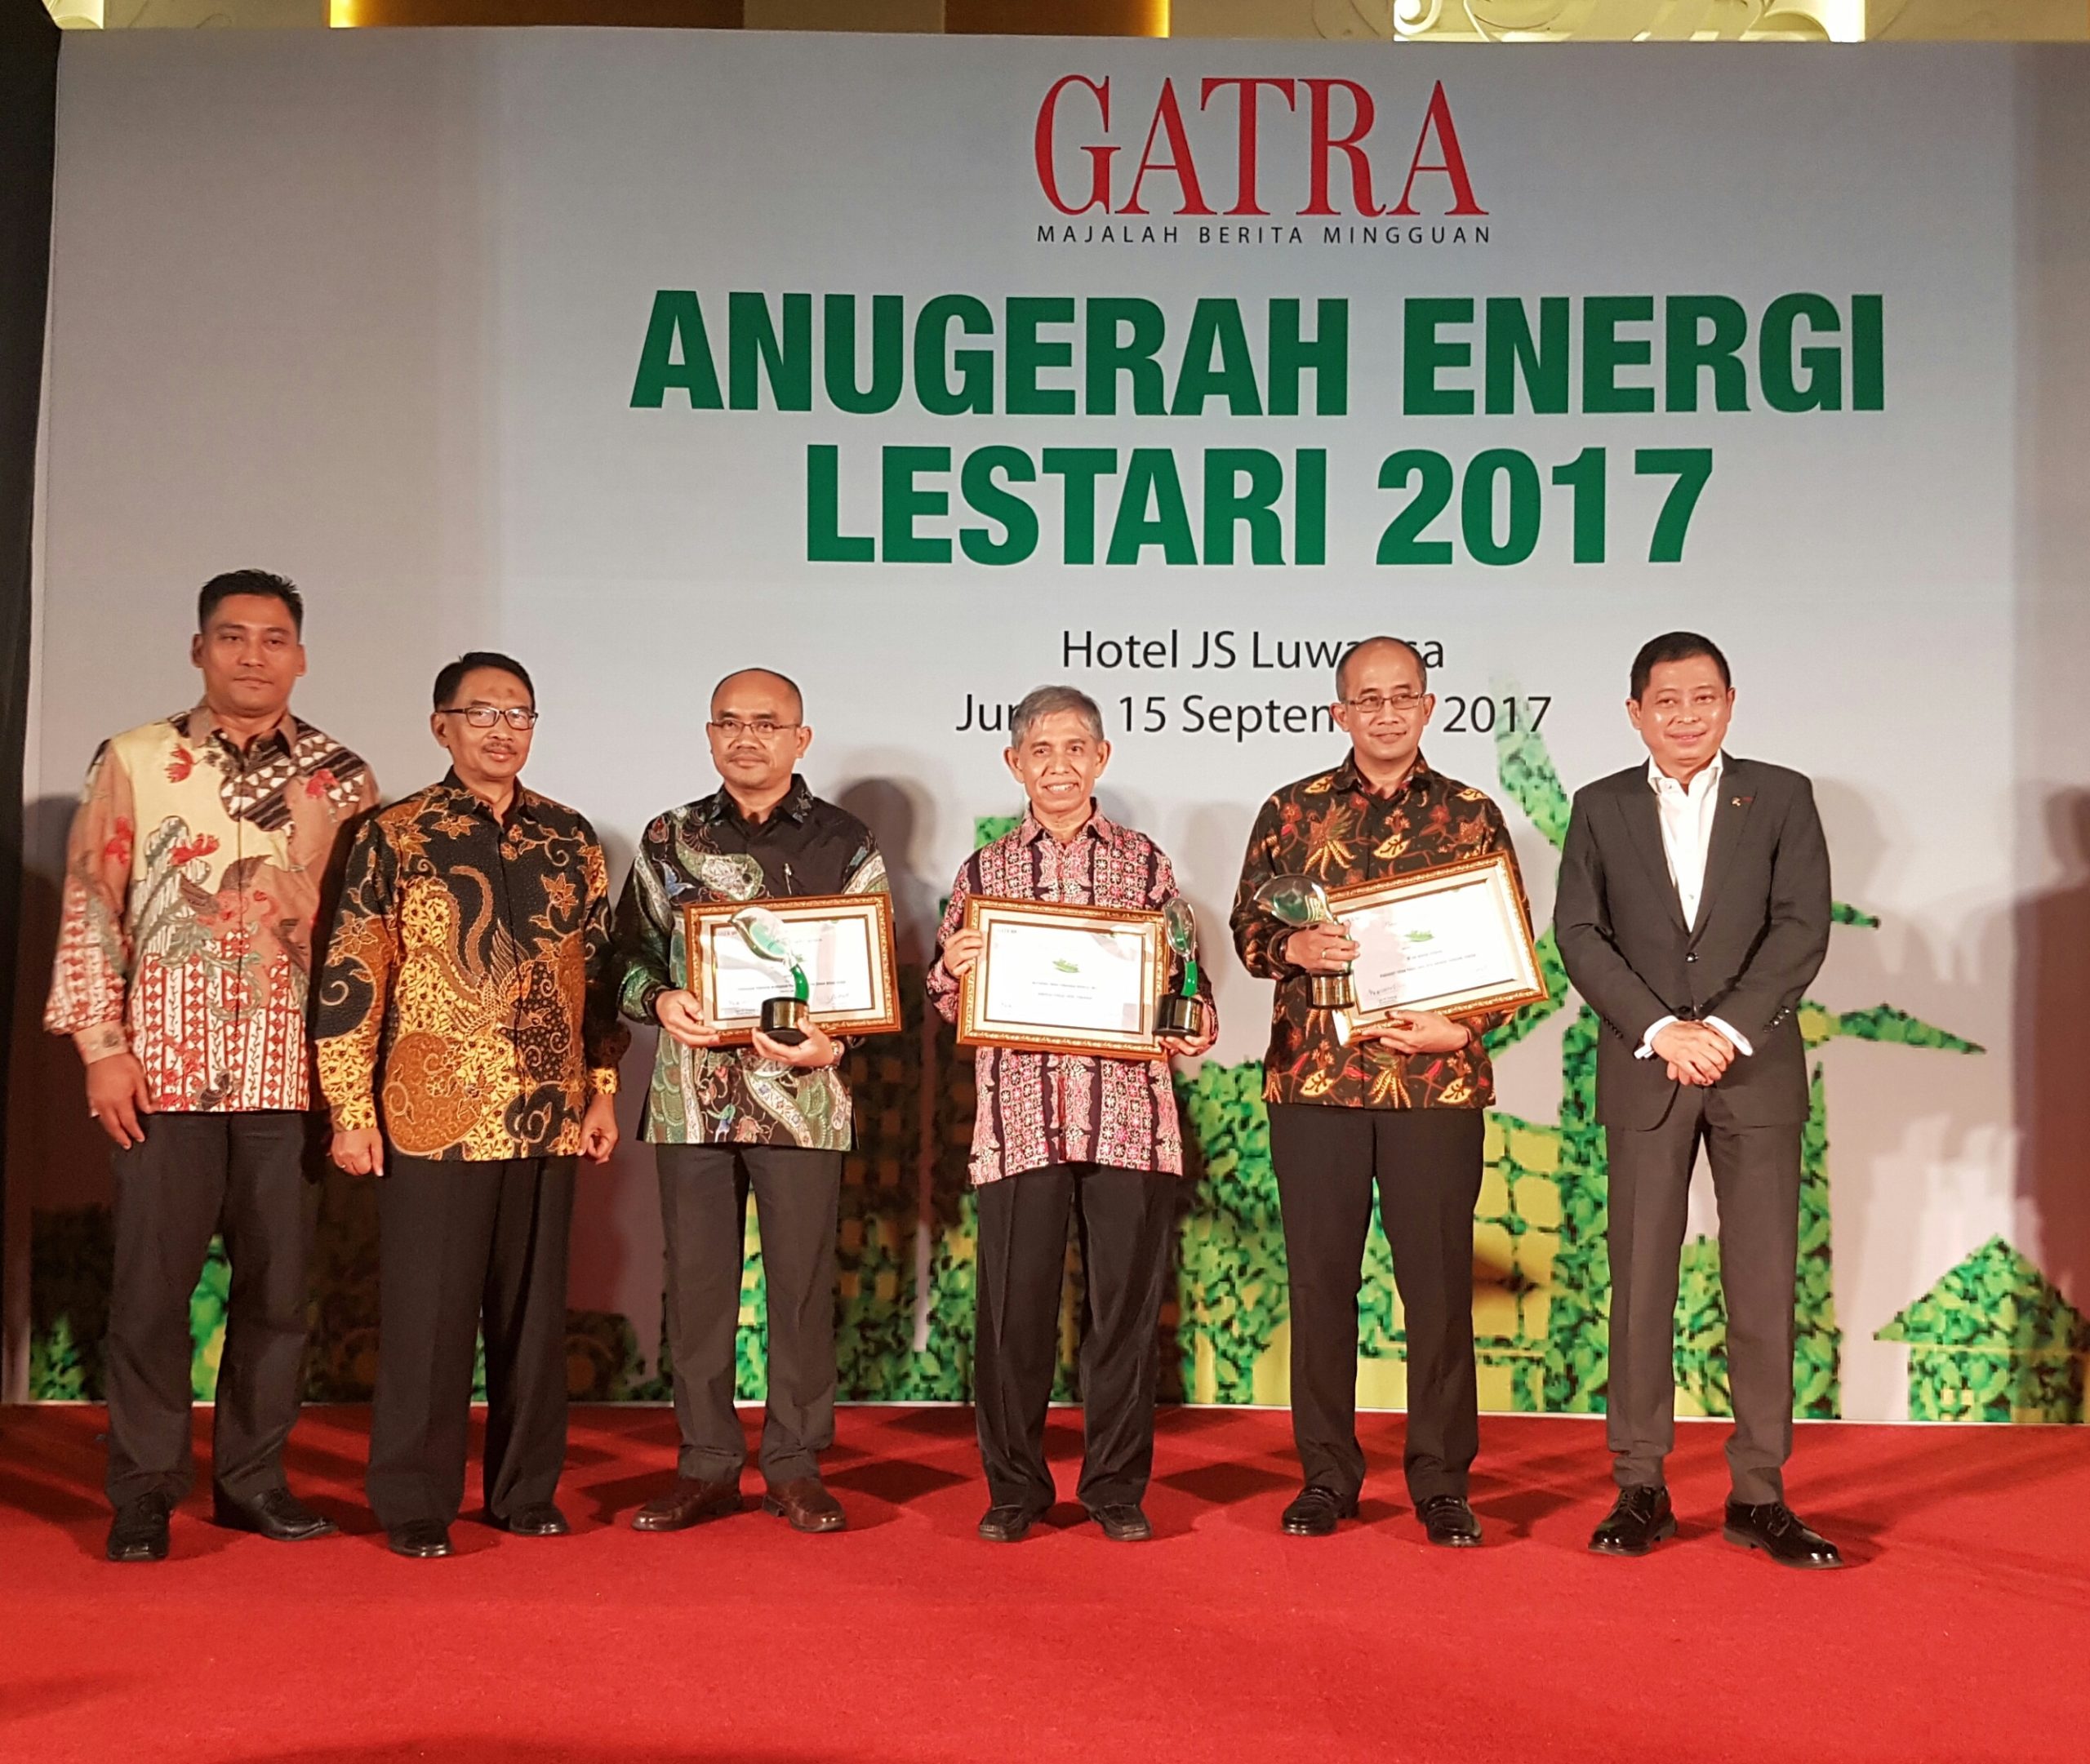 [Gatra] Asian Agri Meraih Penghargaan Anugerah Energi Lestari 2017